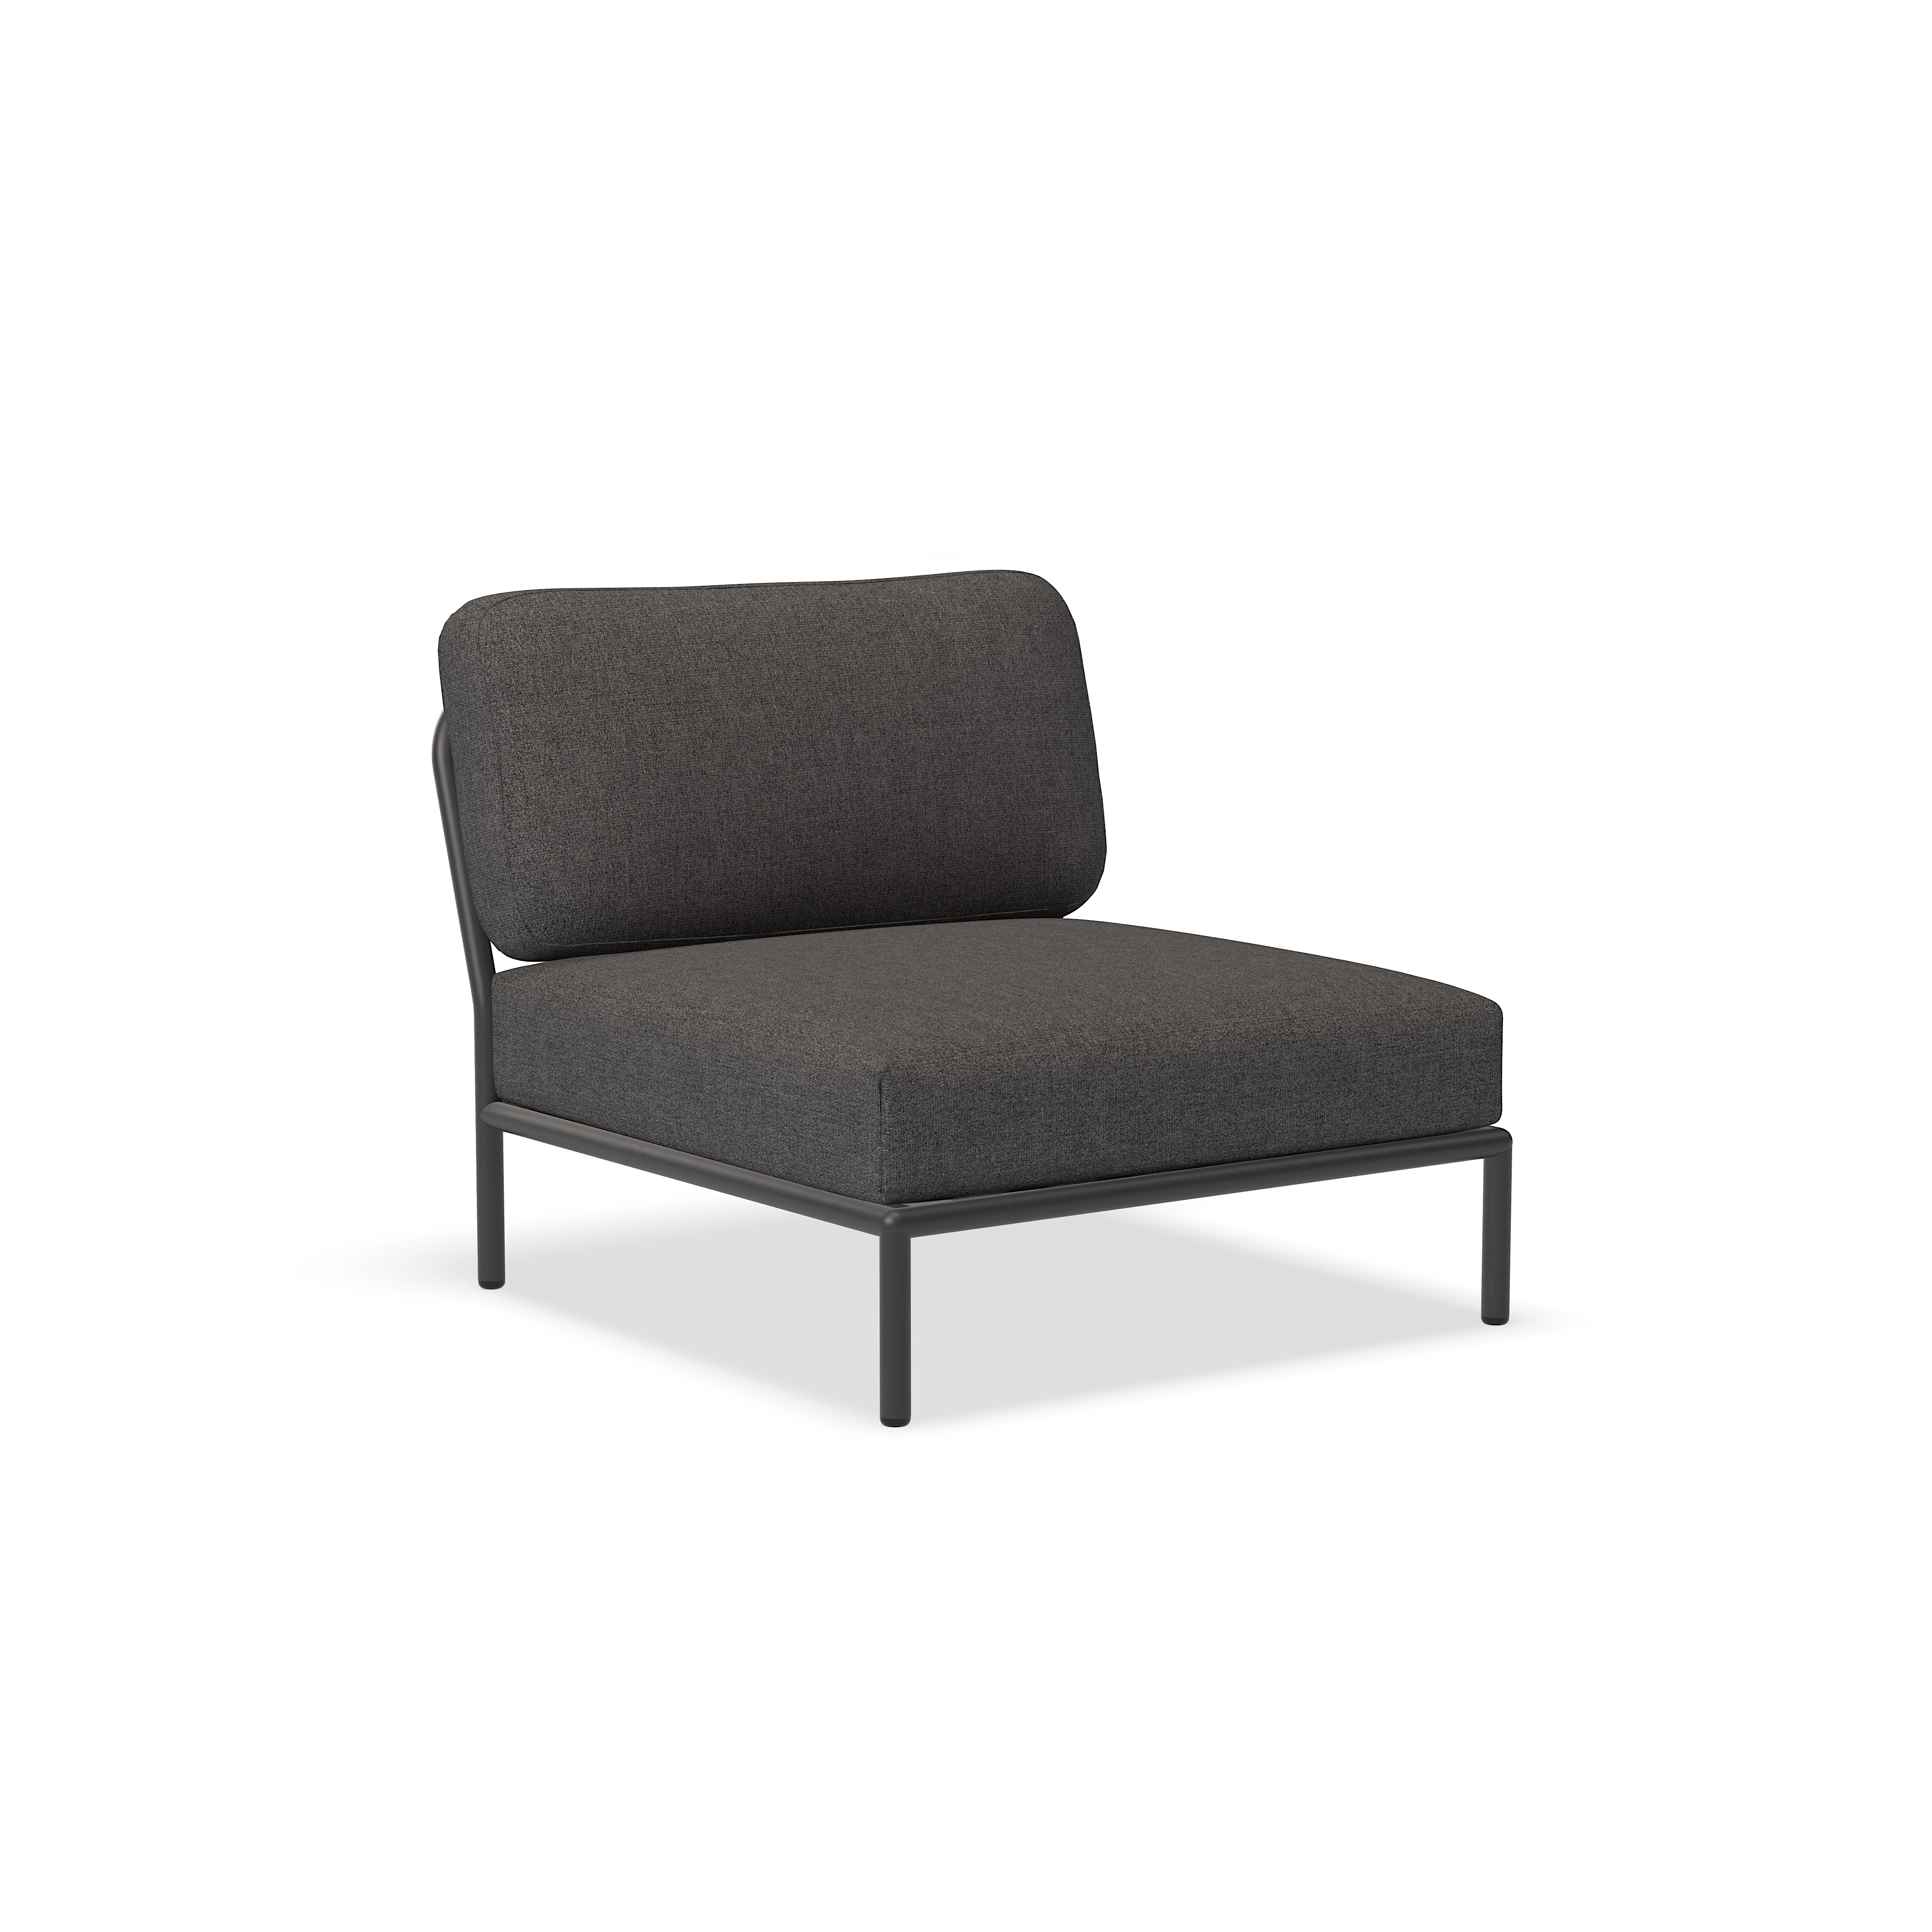 Cadeira - 12205-9851 - Cadeira, Cinza escuro (BASIC), estrutura cinza escuro